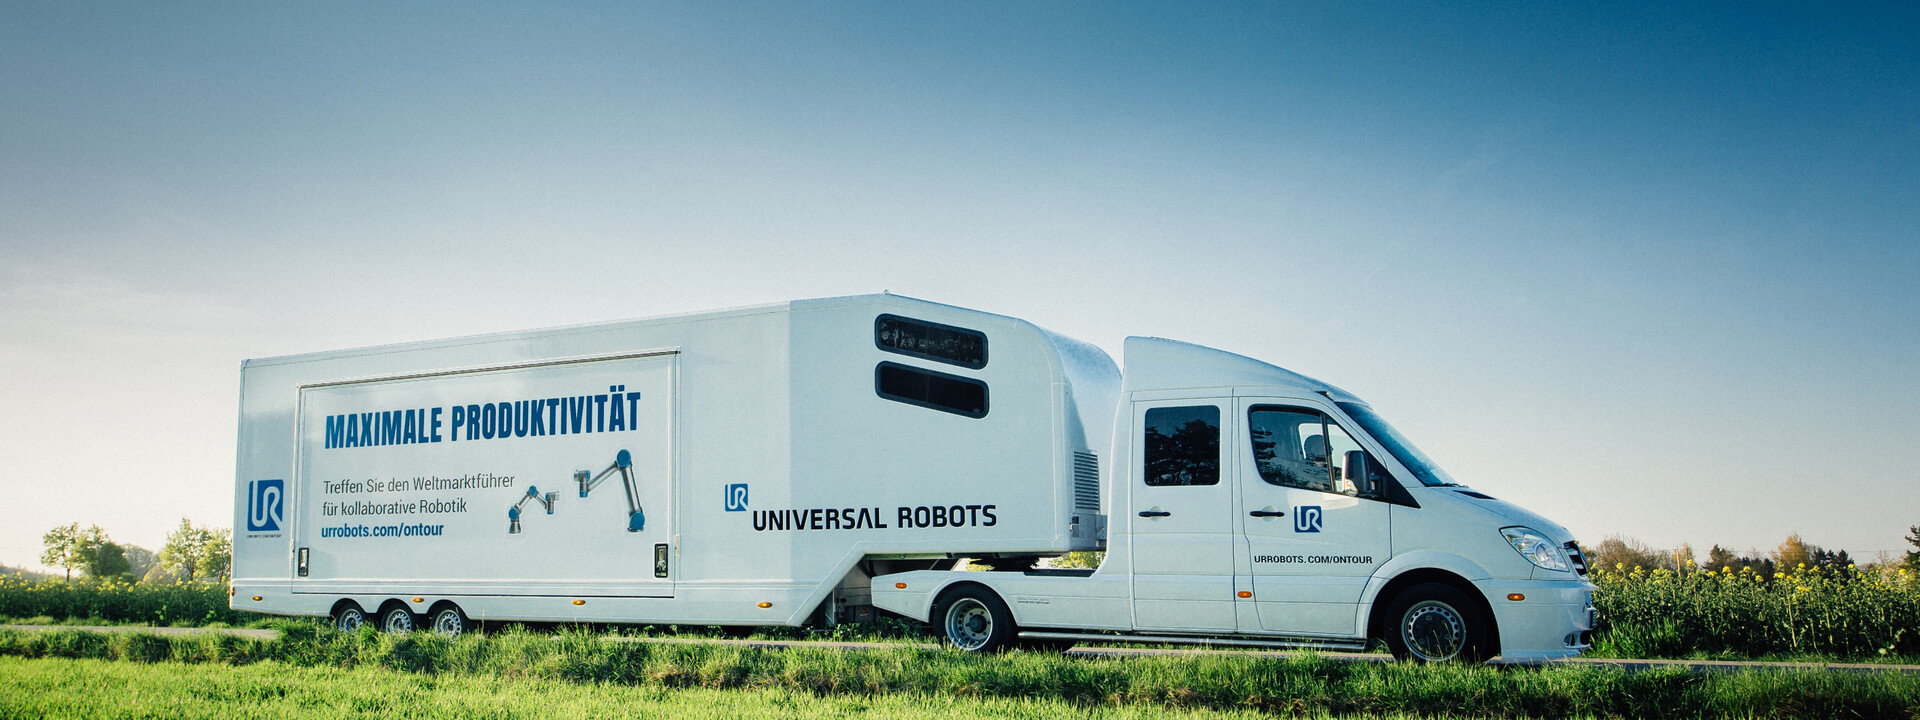 universal-robots-1-hightech-truck-promostar_2.jpg